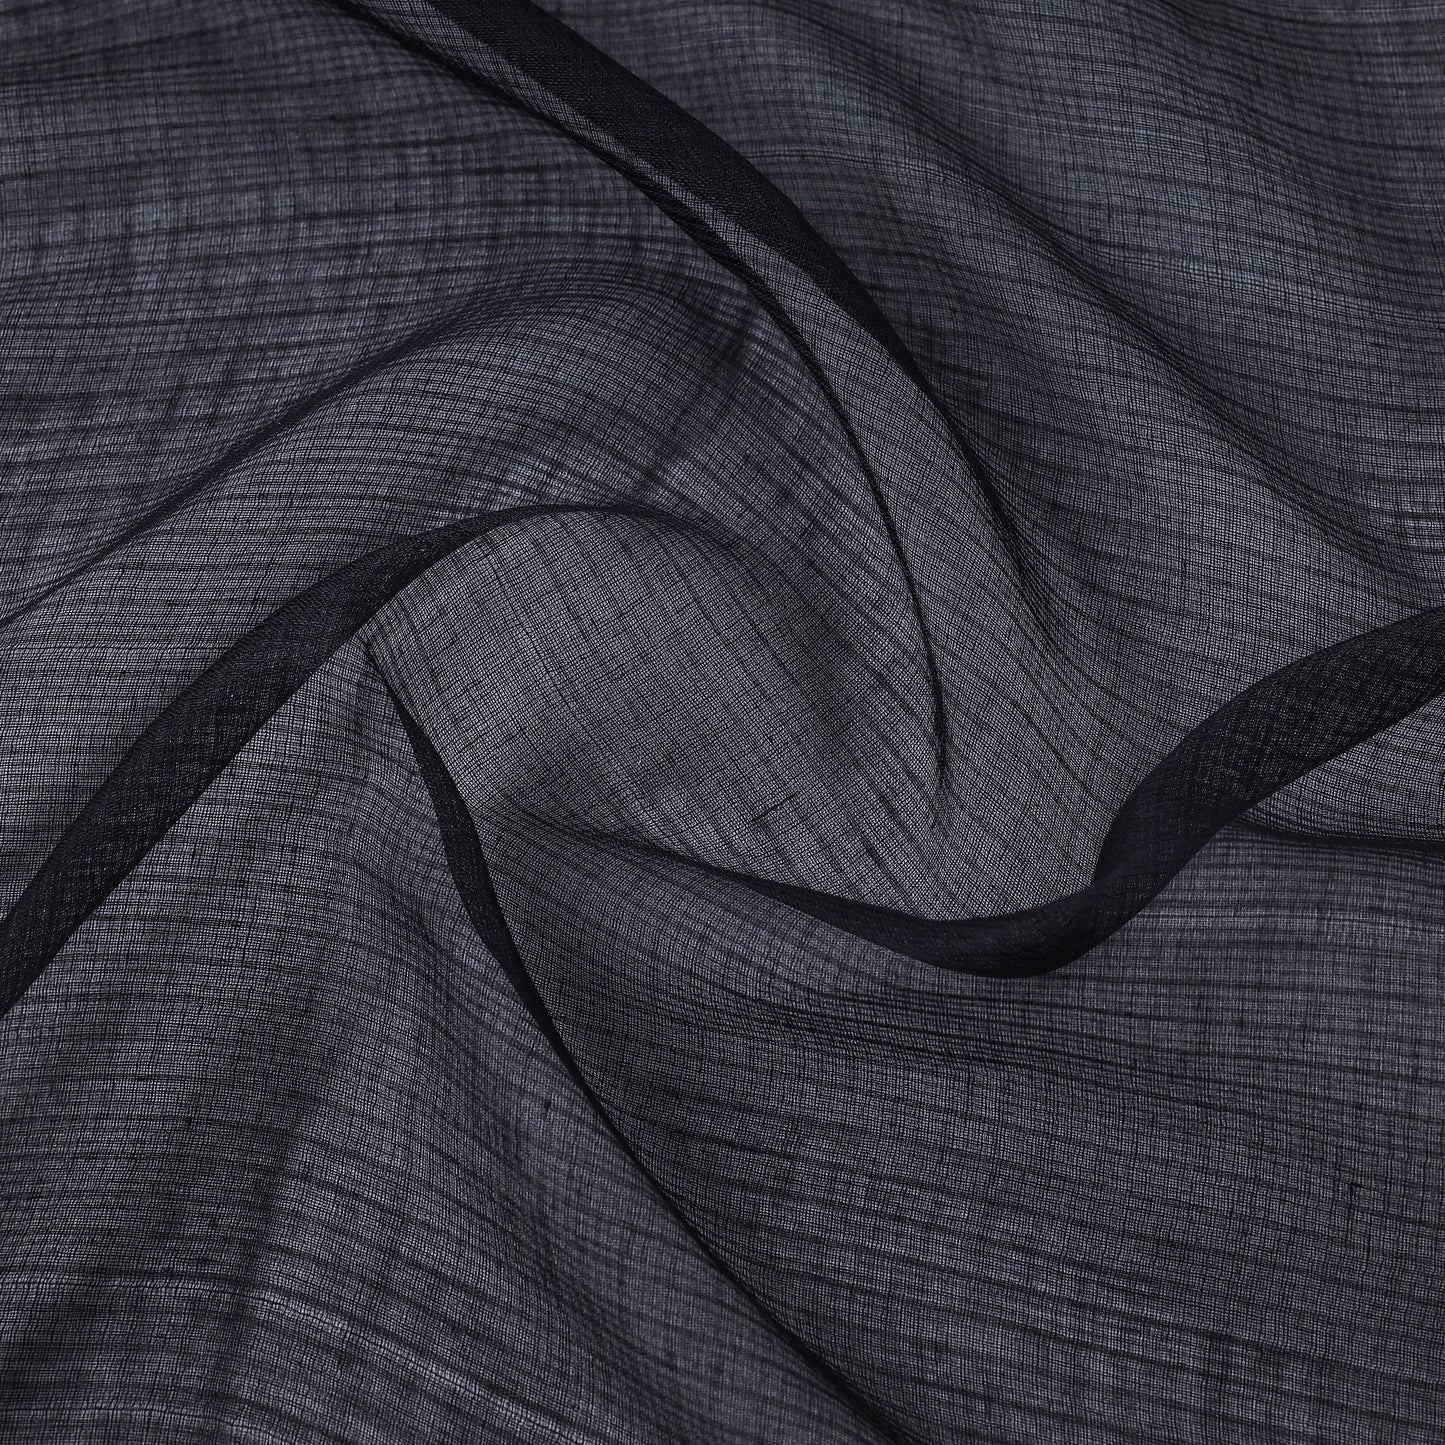 Black - Kota Doria Weaving Plain Cotton Fabric 13